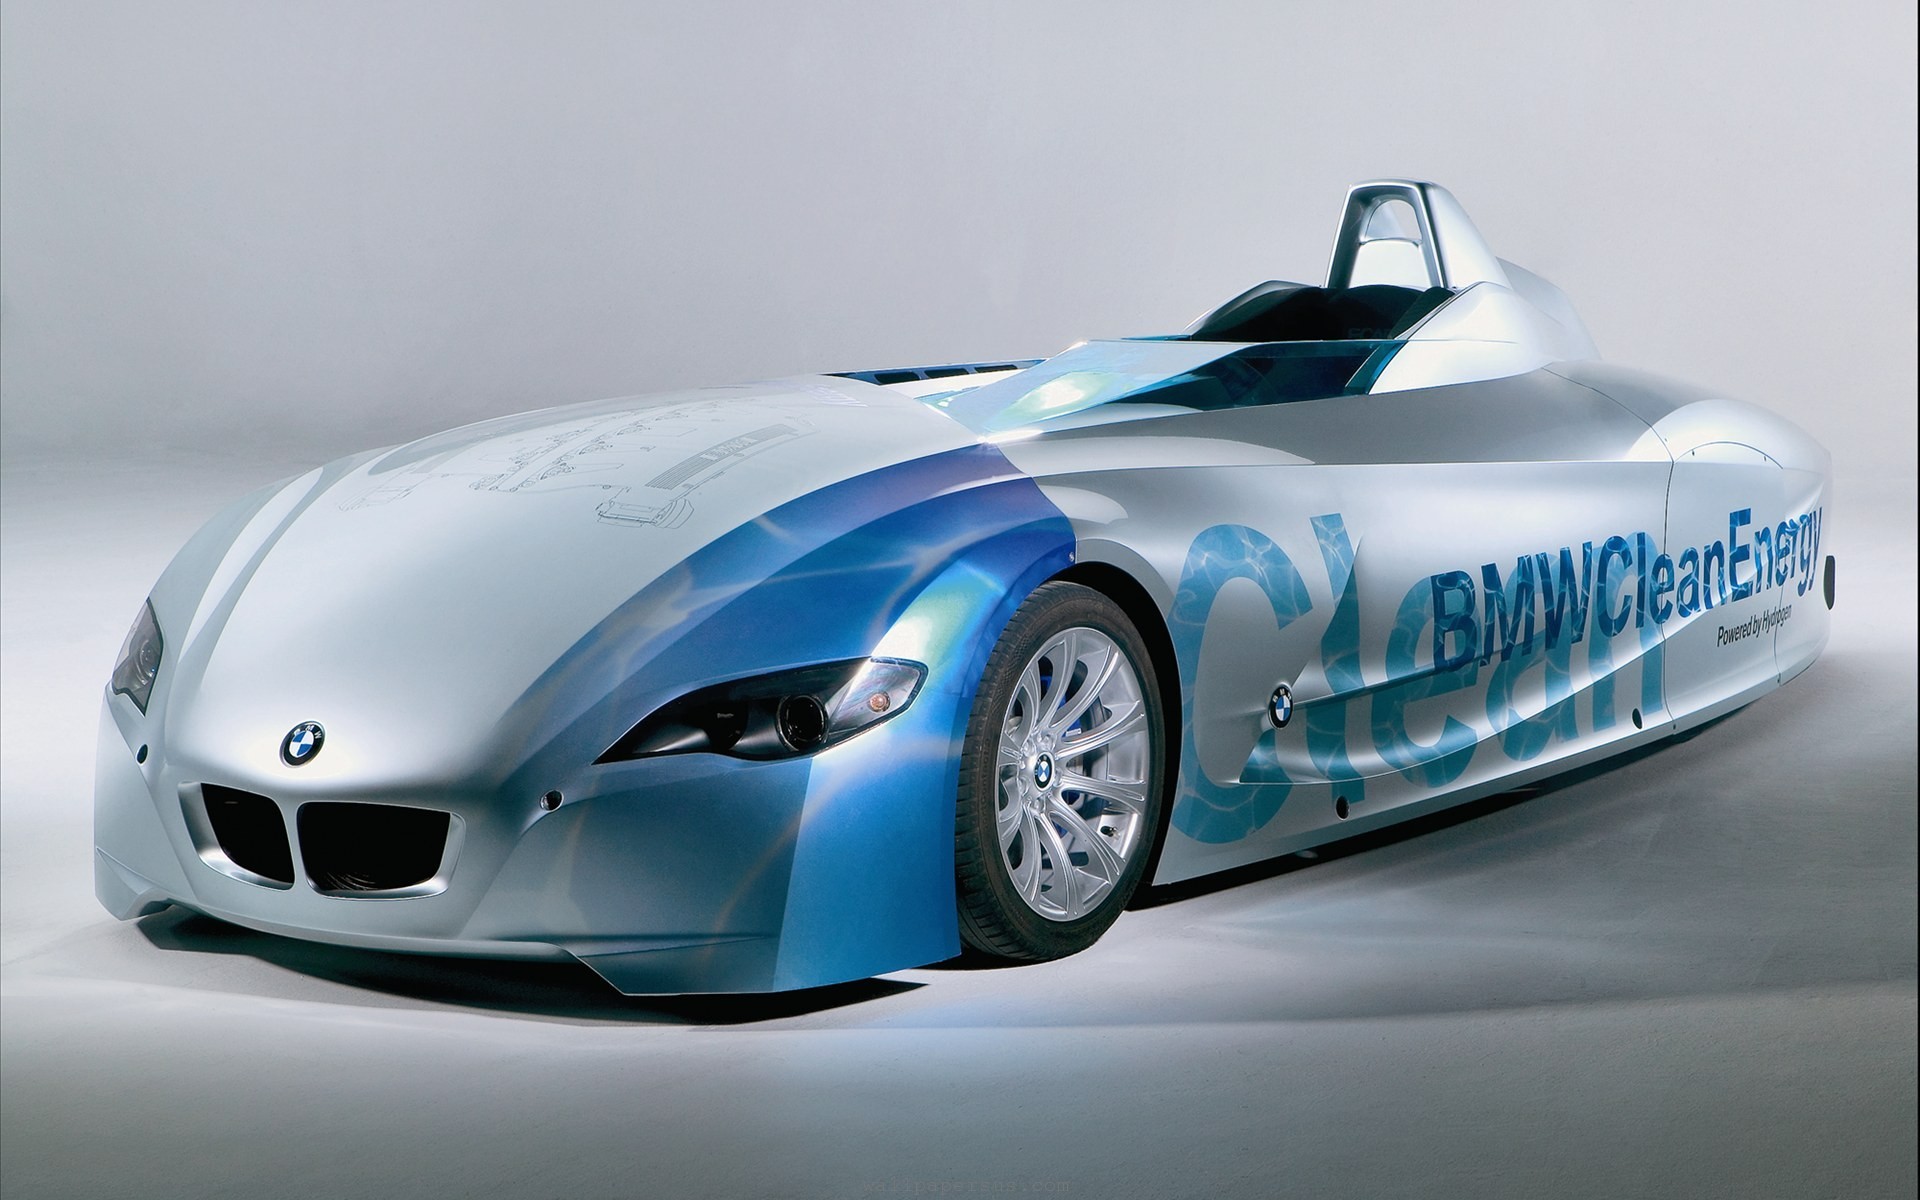 Bmw hydrogen race car #1